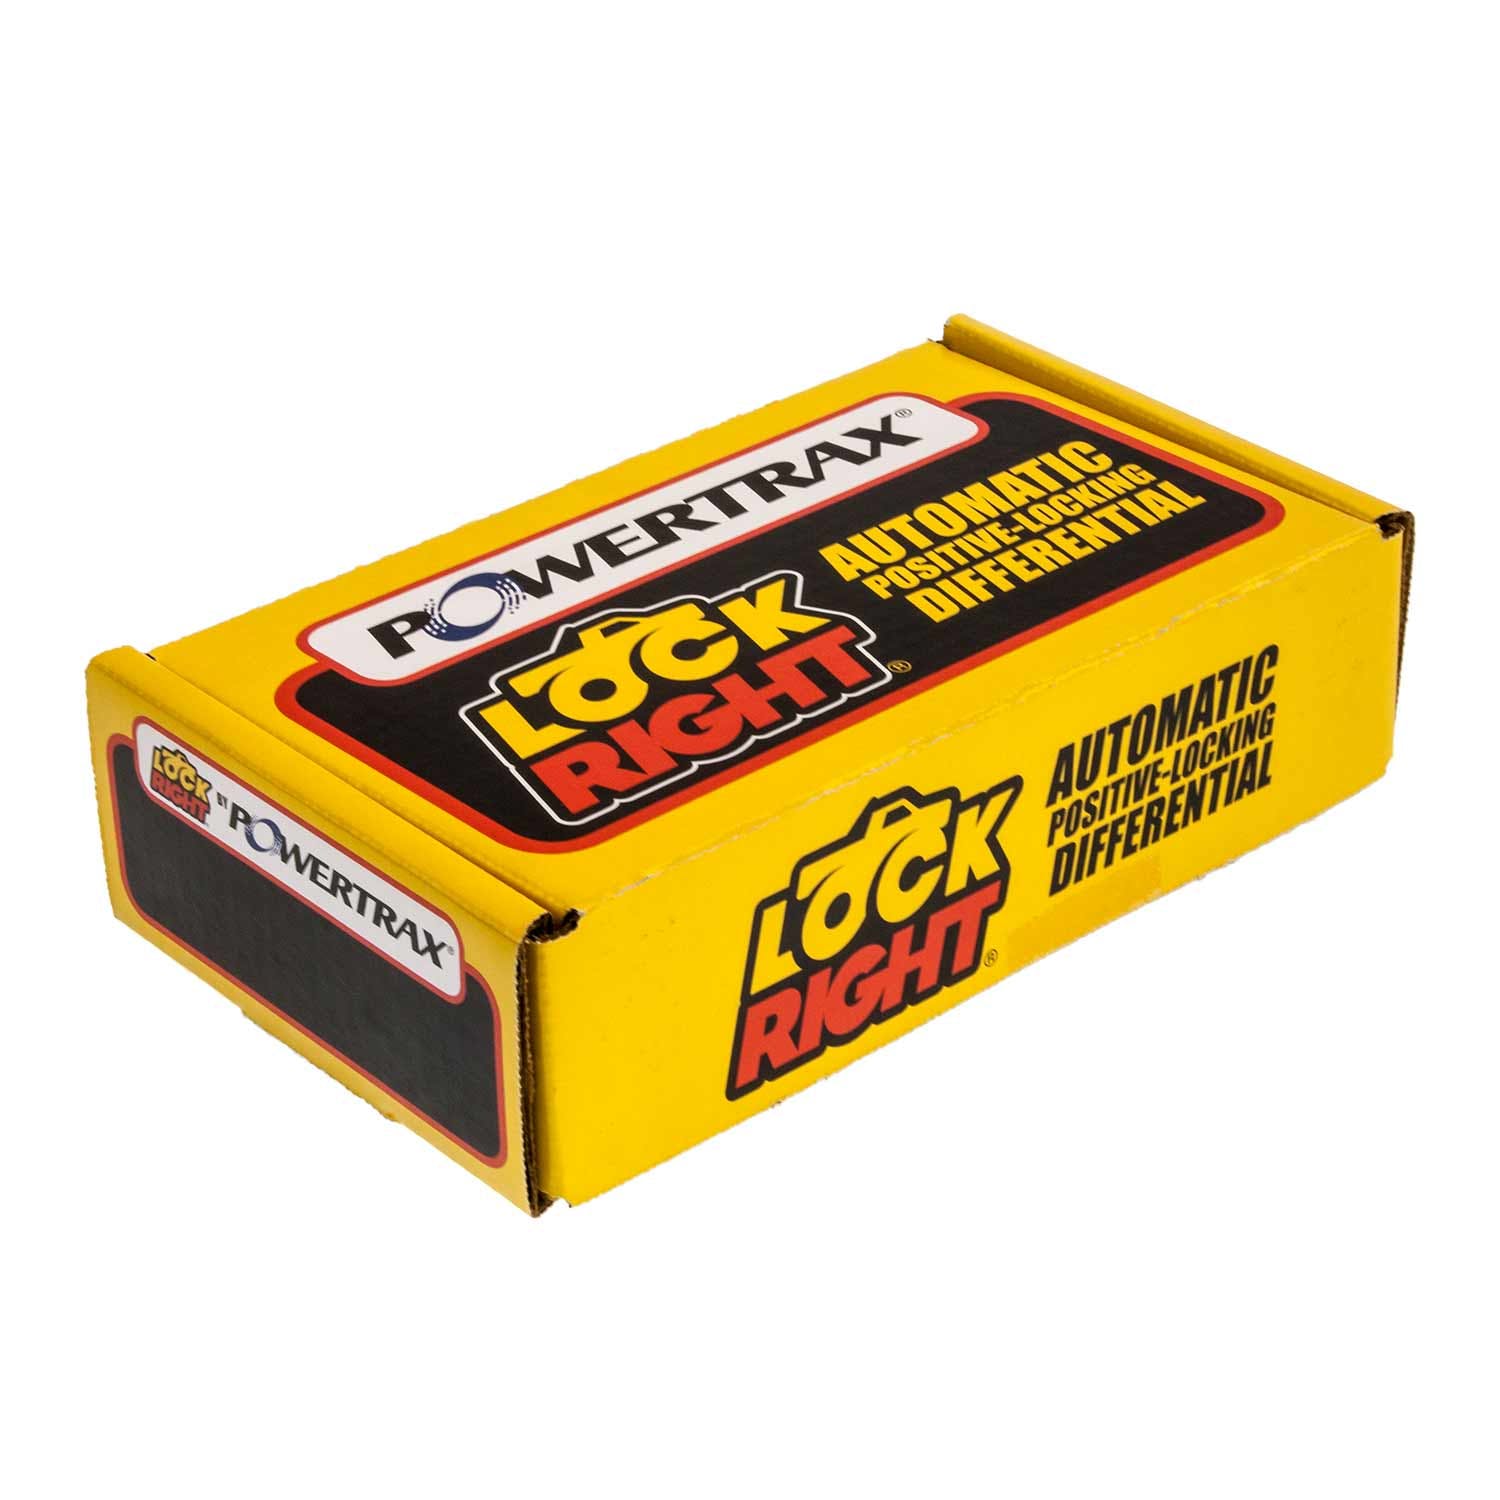 PowerTrax 1630-LR Lock Right Locker